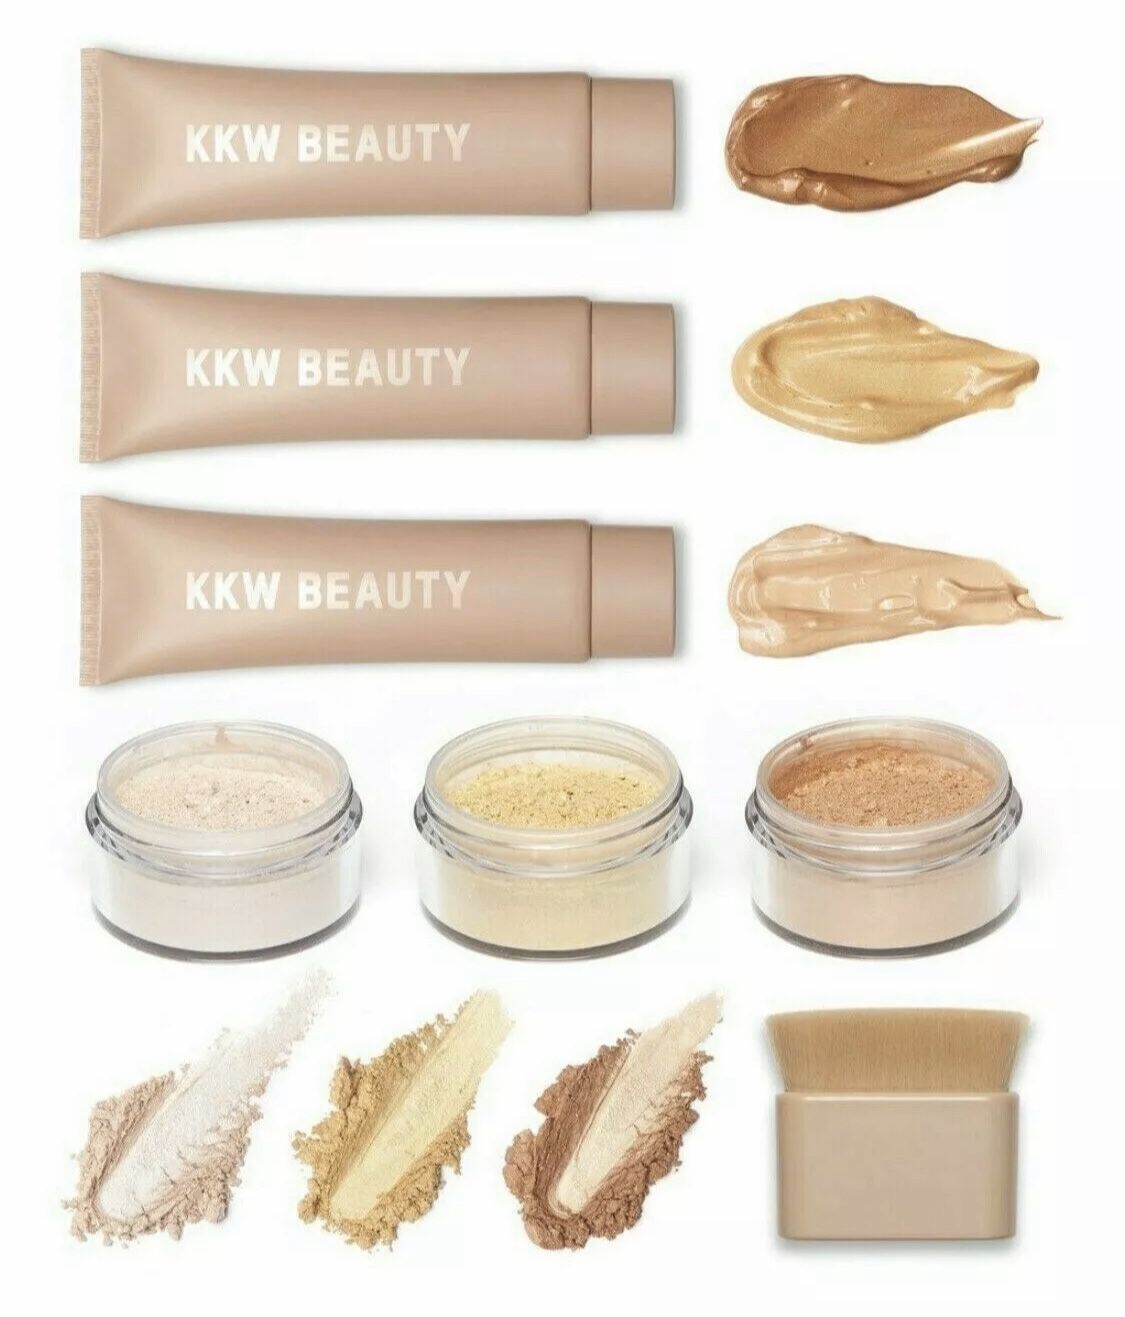 KKW BEAUTY Complete Body Makeup Shimmer Brush Kit BRAND NEW